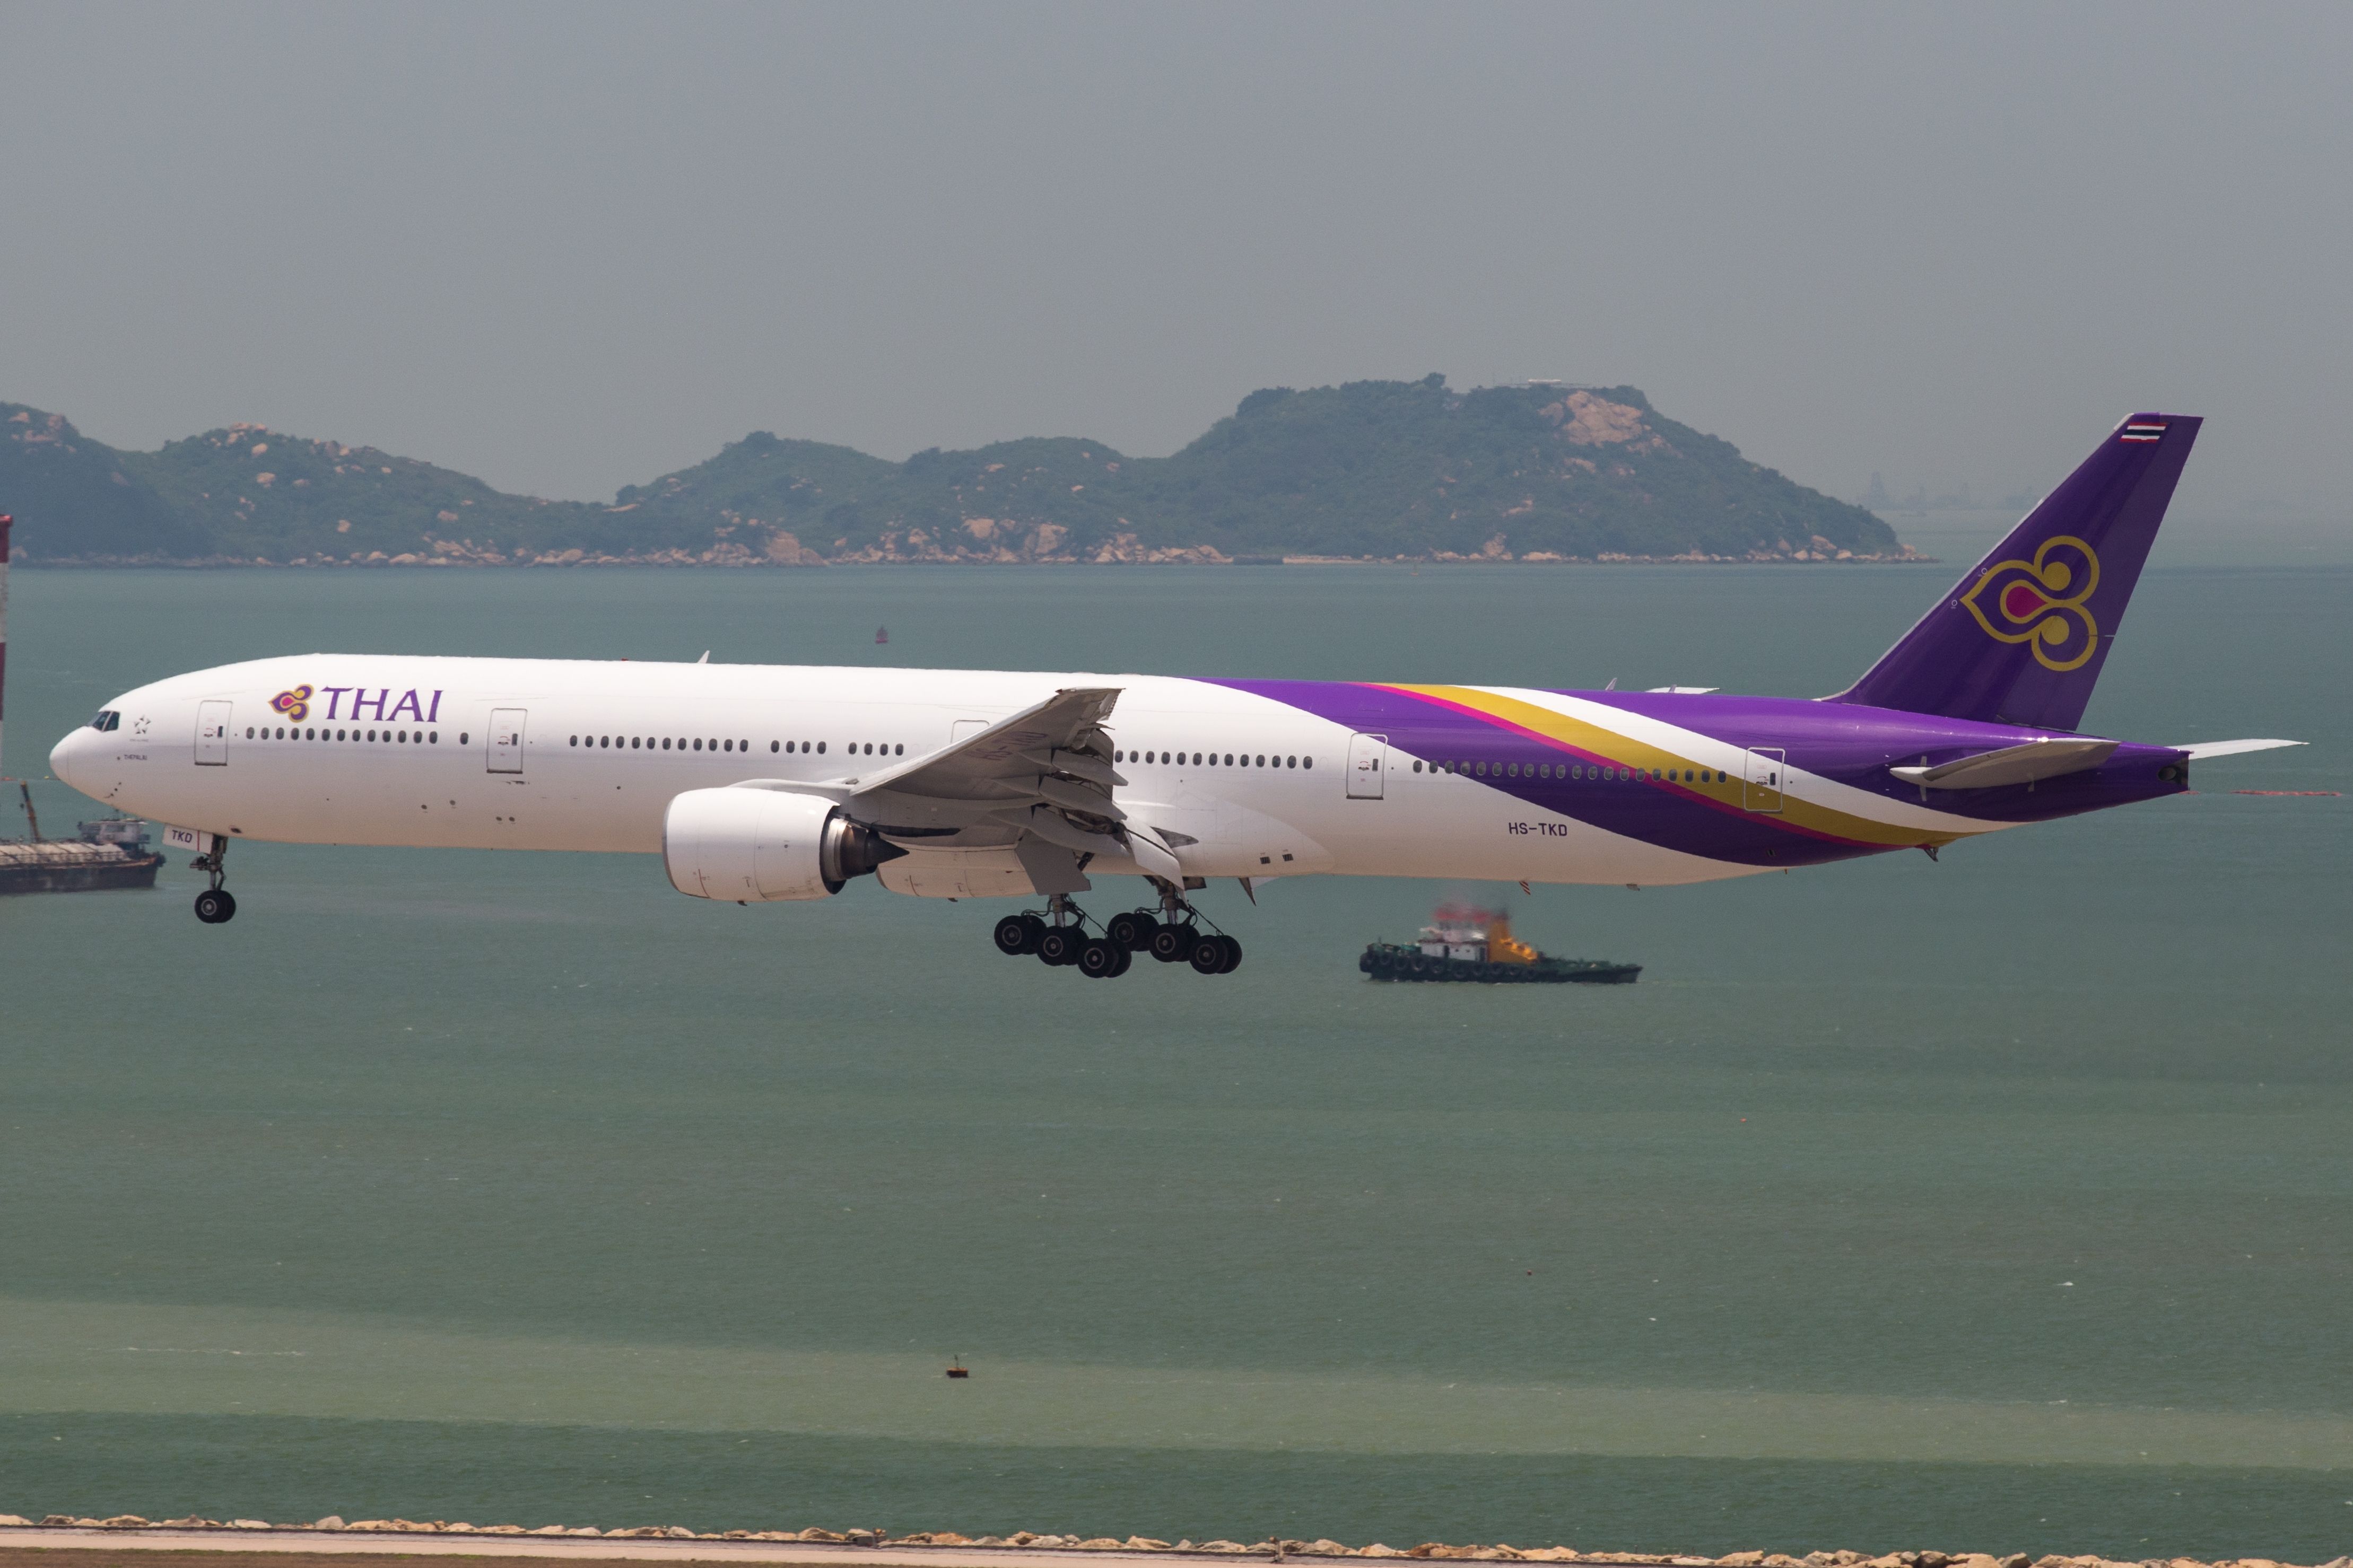 A Thai Airways Boeing 777 landing at HKG airport